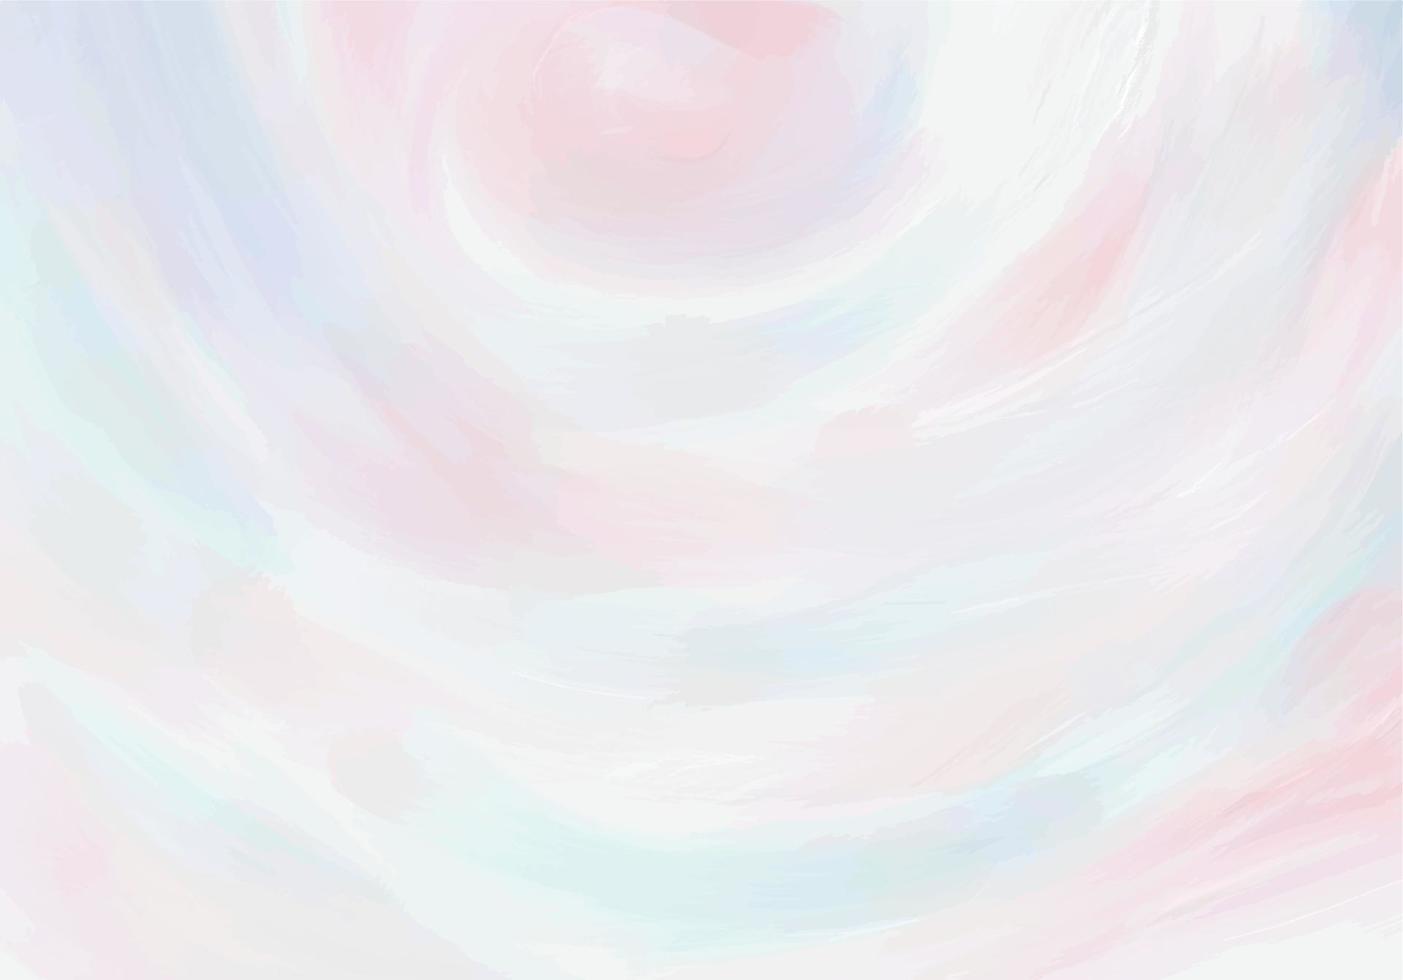 Pastell blau und rosa Öl Acryl Pinselstrich Valentinstag Grunge strukturierten Hintergrund vektor